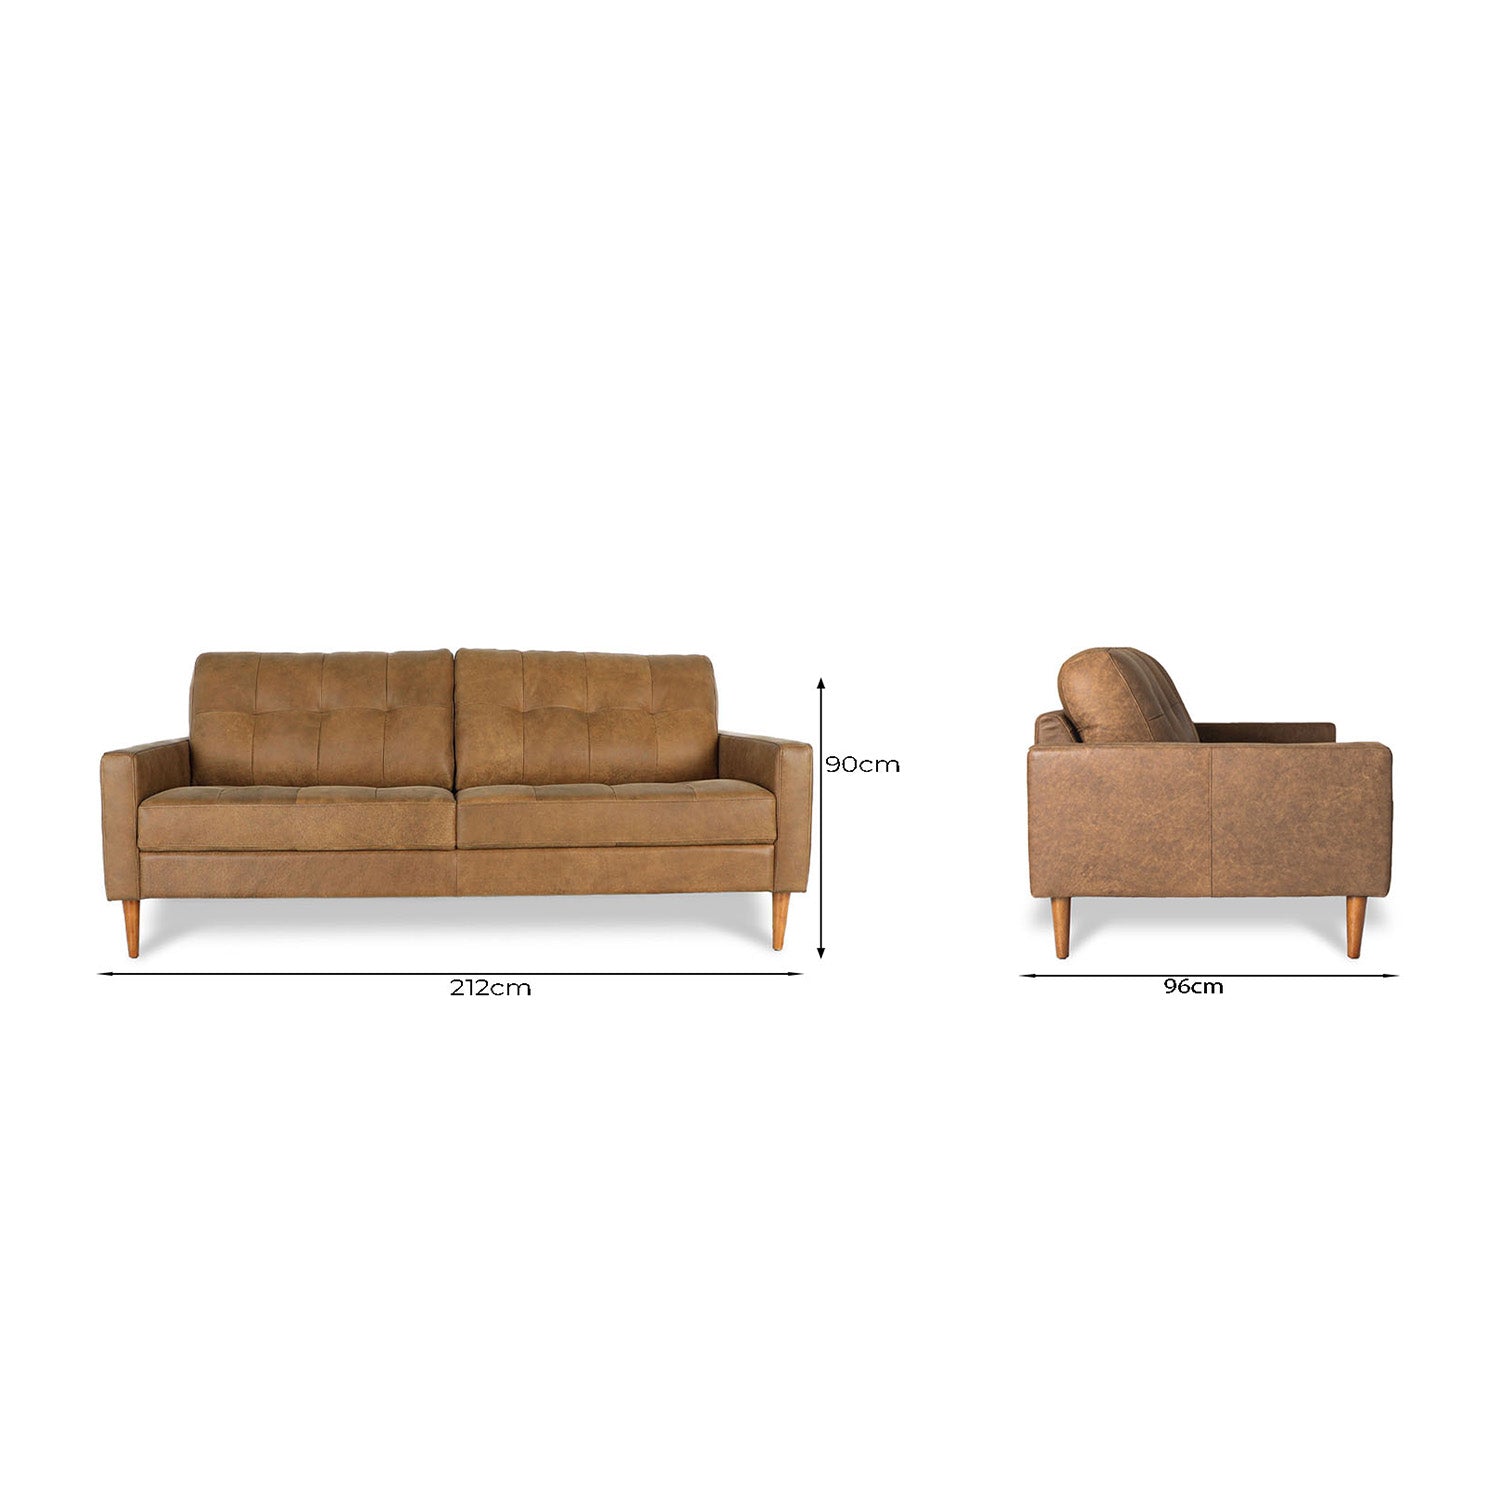 Classic Leather 3 Seat Sofa